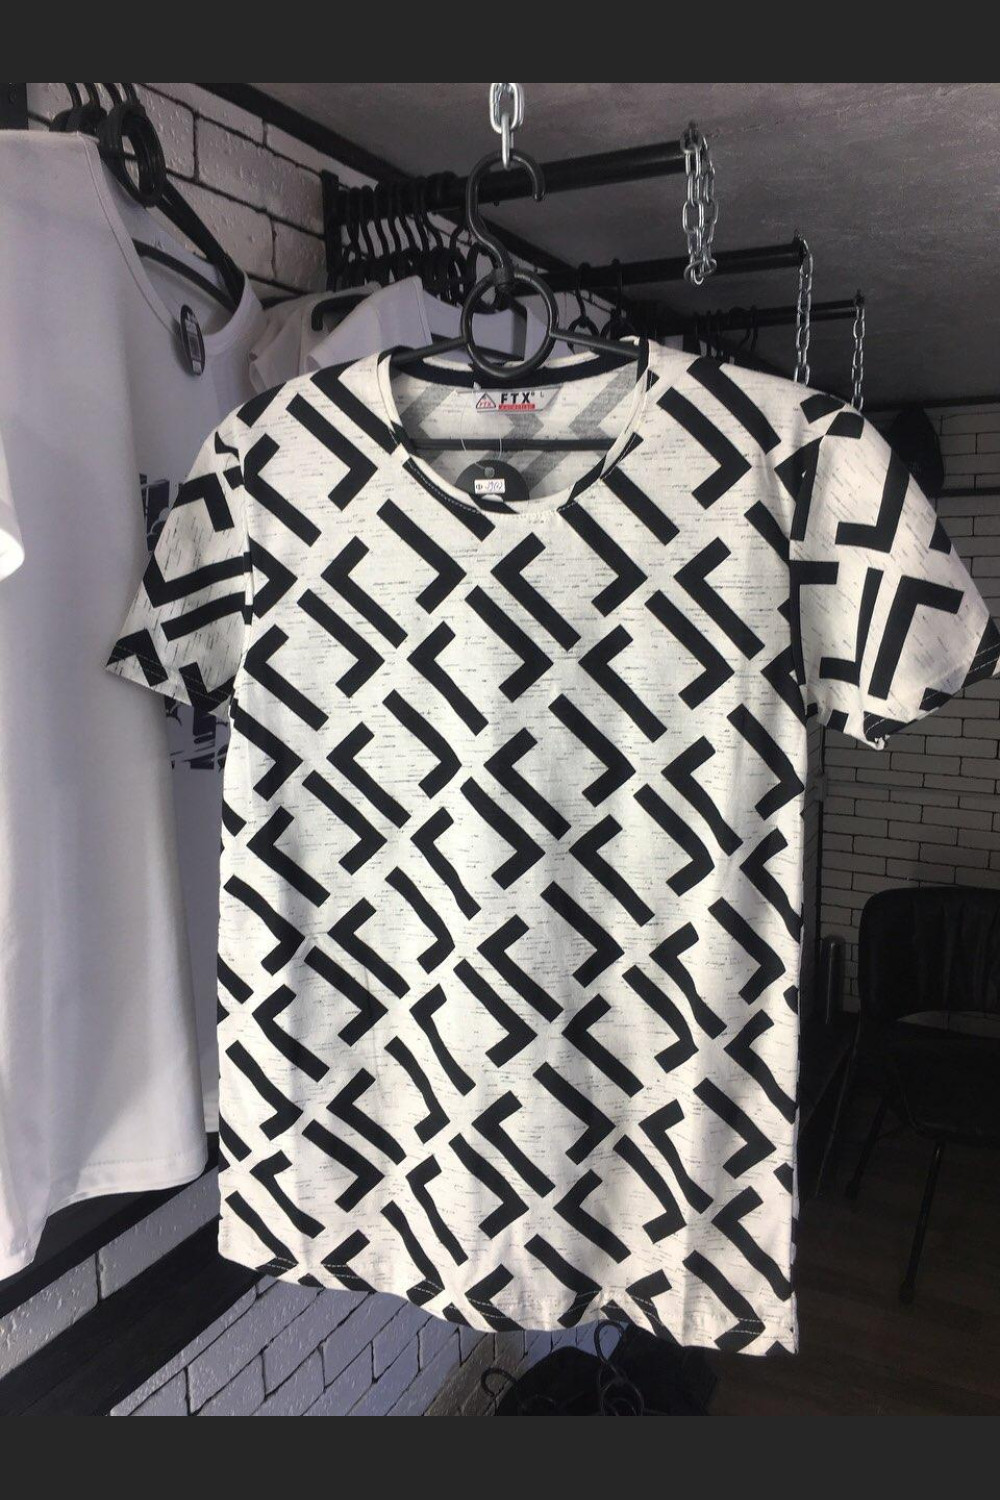 Чоловіча футболка - З геометричними візерунками (Чорно-біла)